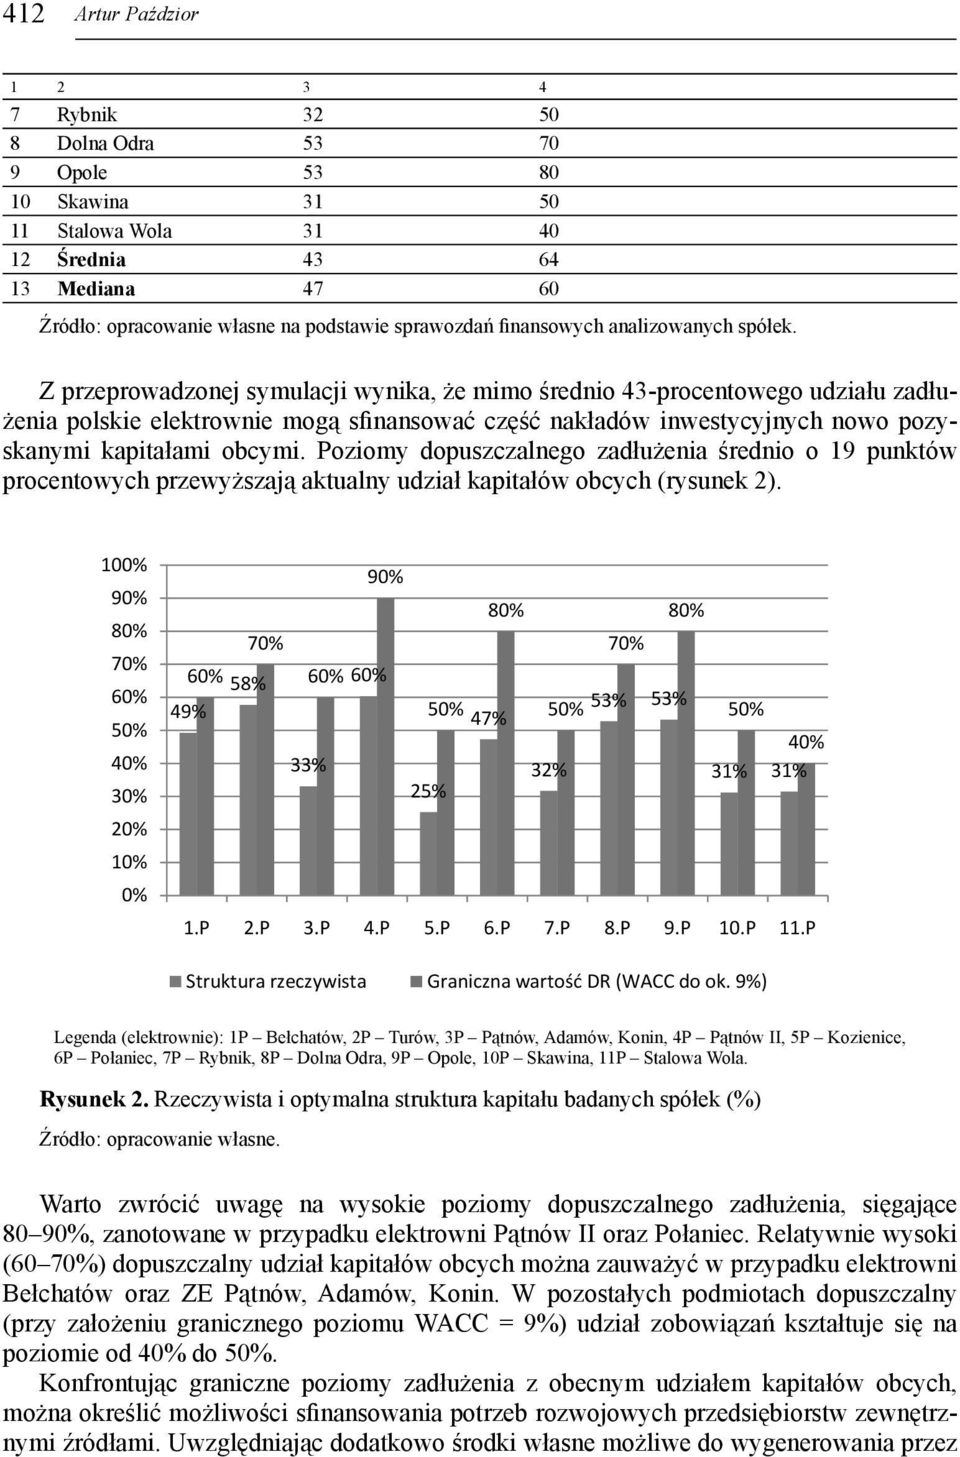 Z przeprowadzonej symulacji wynika, że mimo średnio 43-procentowego udziału zadłużenia polskie elektrownie mogą sfinansować część nakładów inwestycyjnych nowo pozyskanymi kapitałami obcymi.